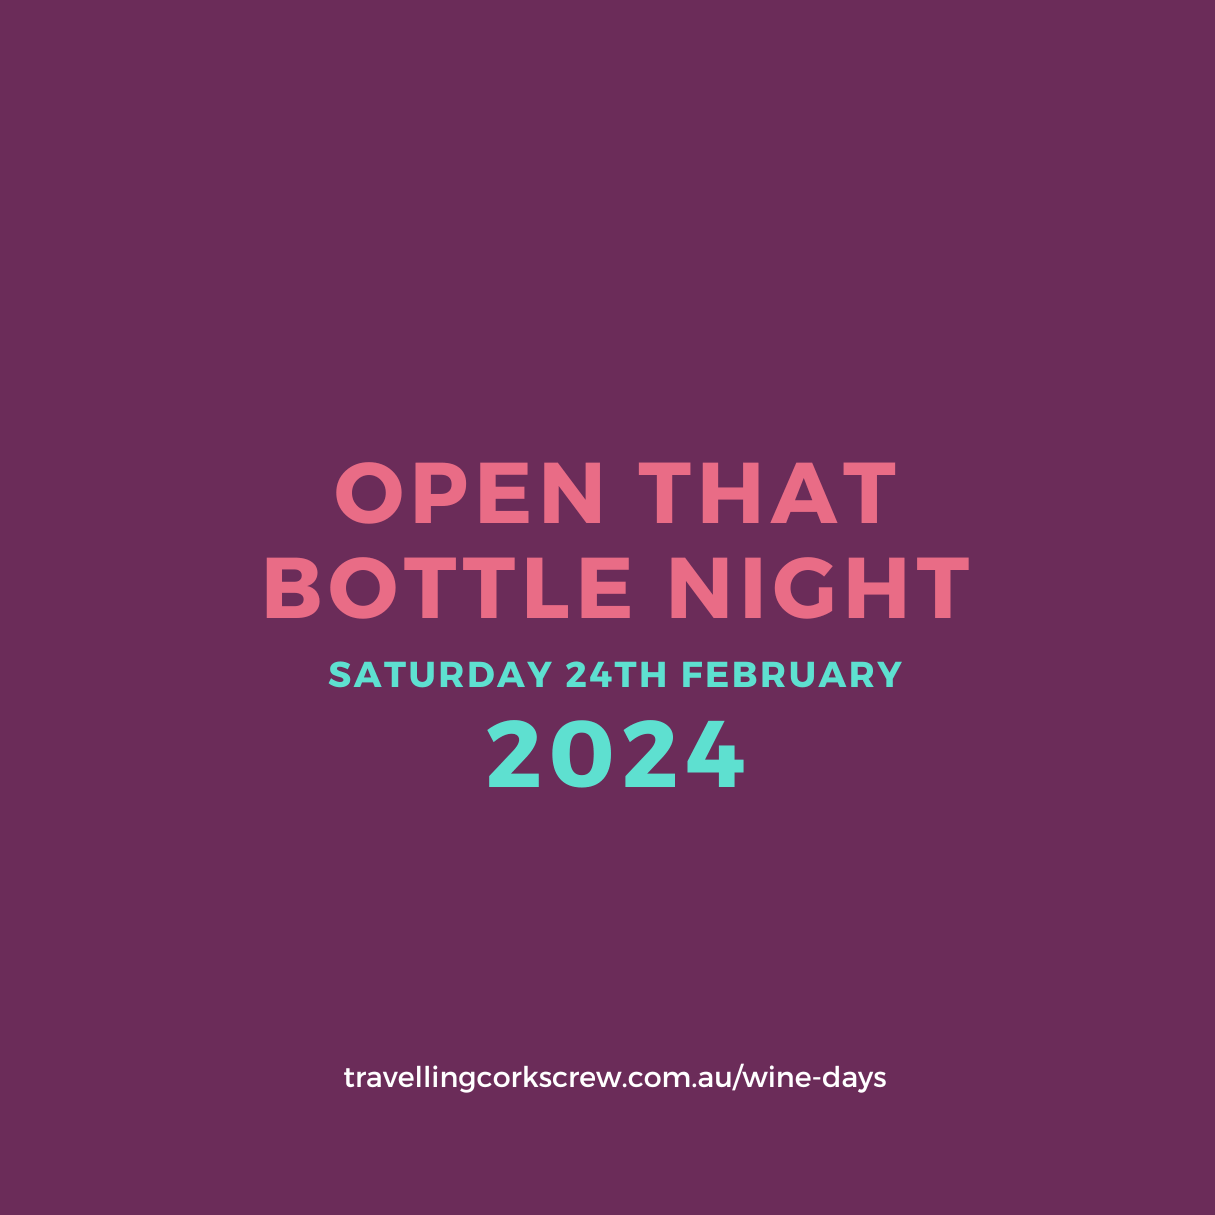 Open that bottle night 2024